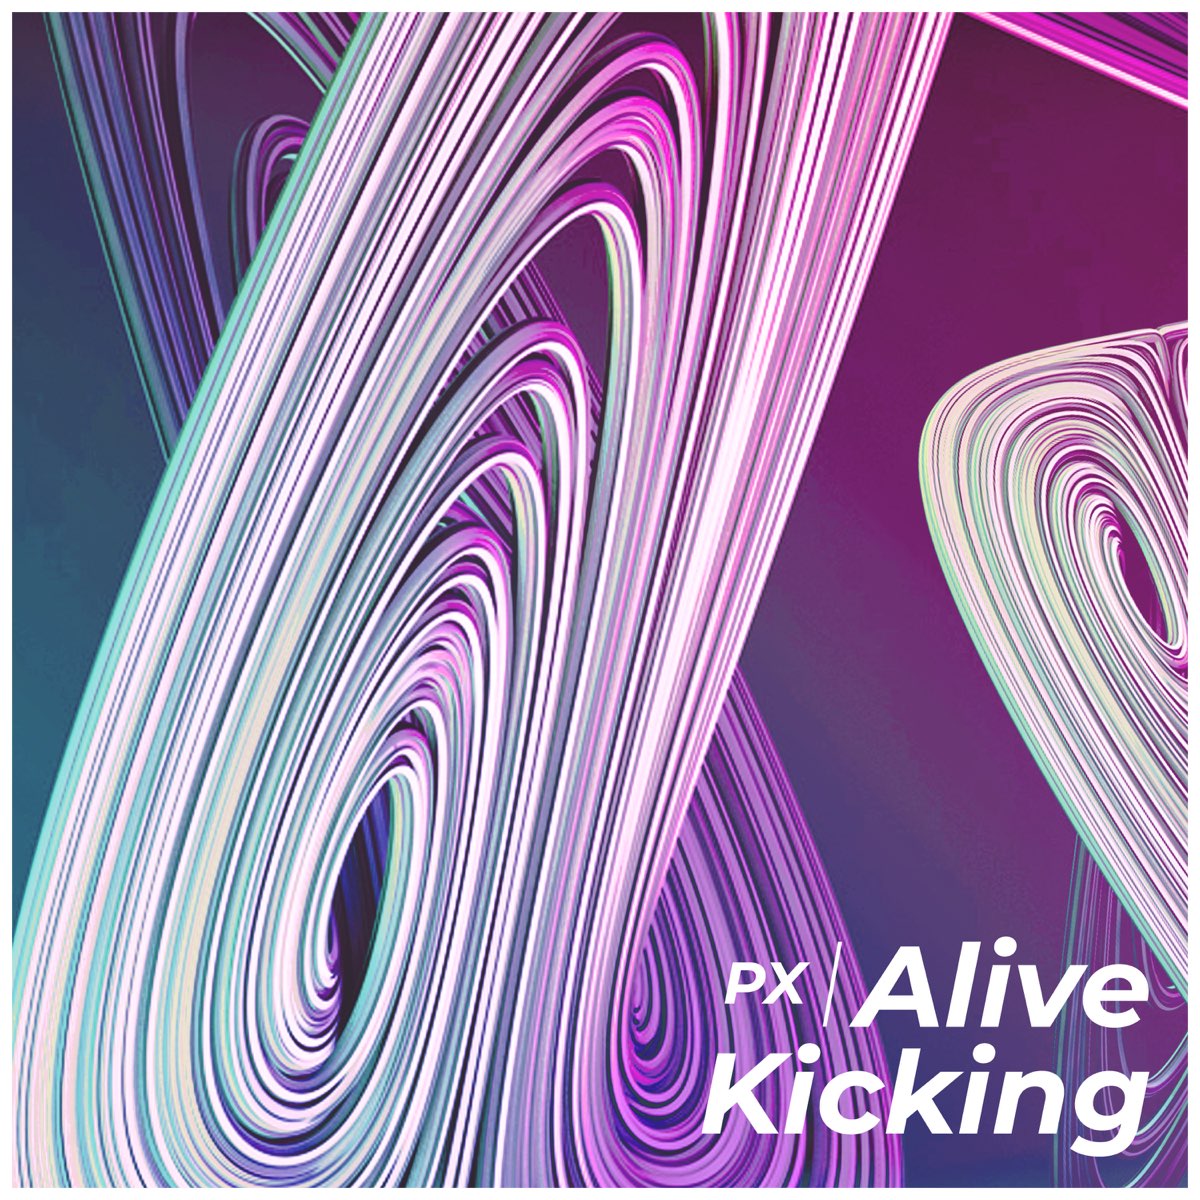 Alive and kicking. OVL.